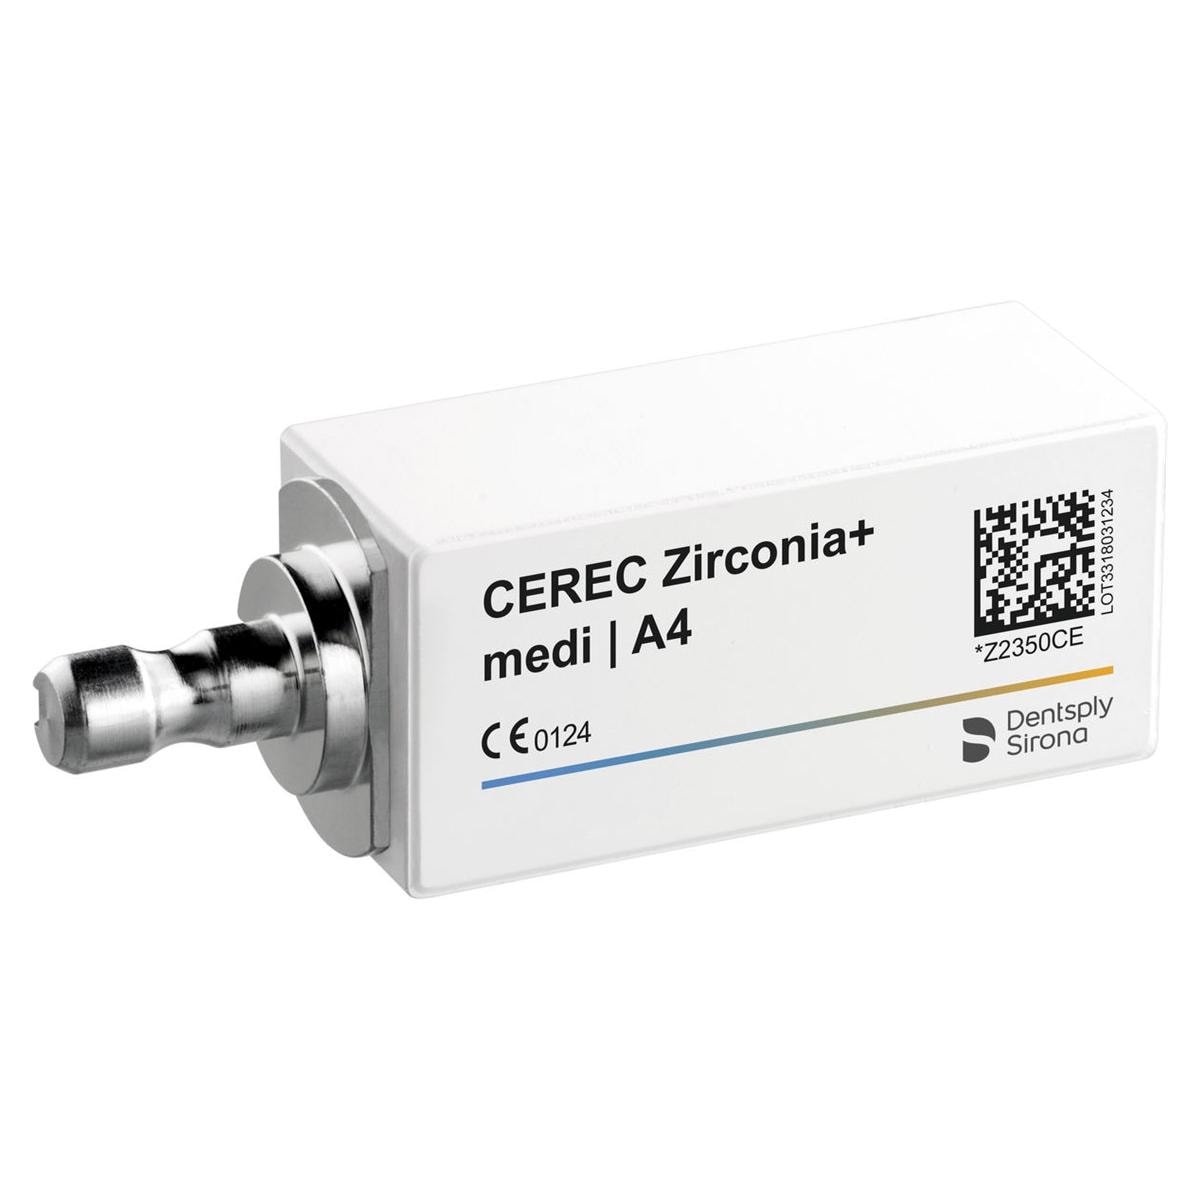 CEREC Zirconia+ medi - A4, 3 pcs